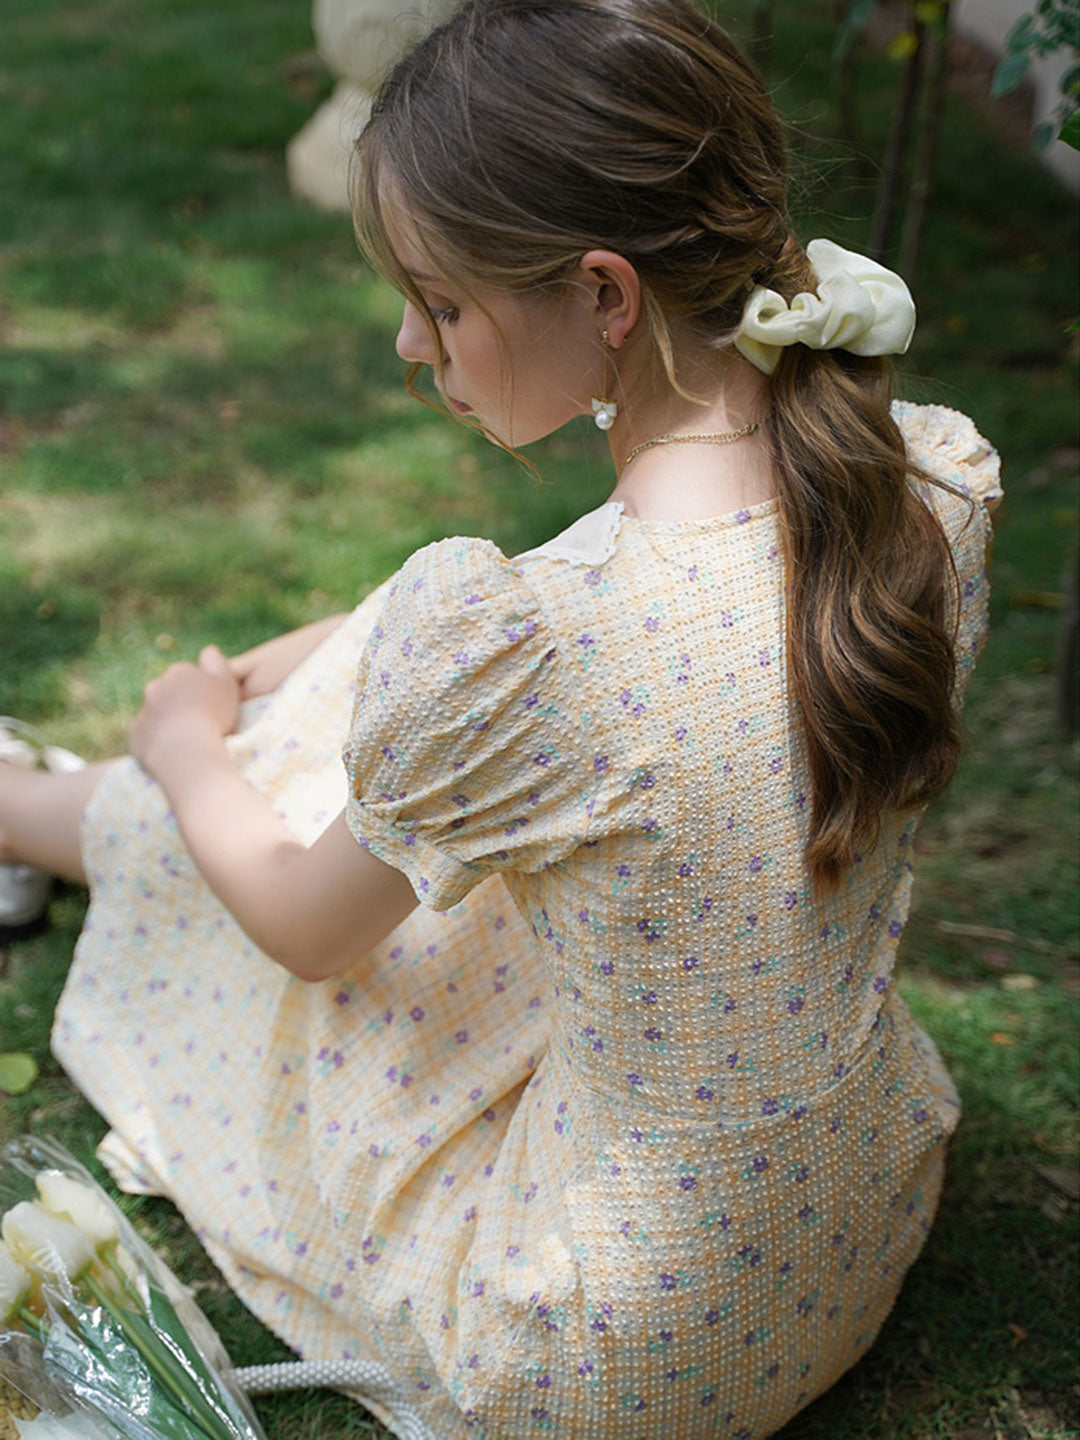 Ashley Retro Doll Collar Plaid Floral Dress